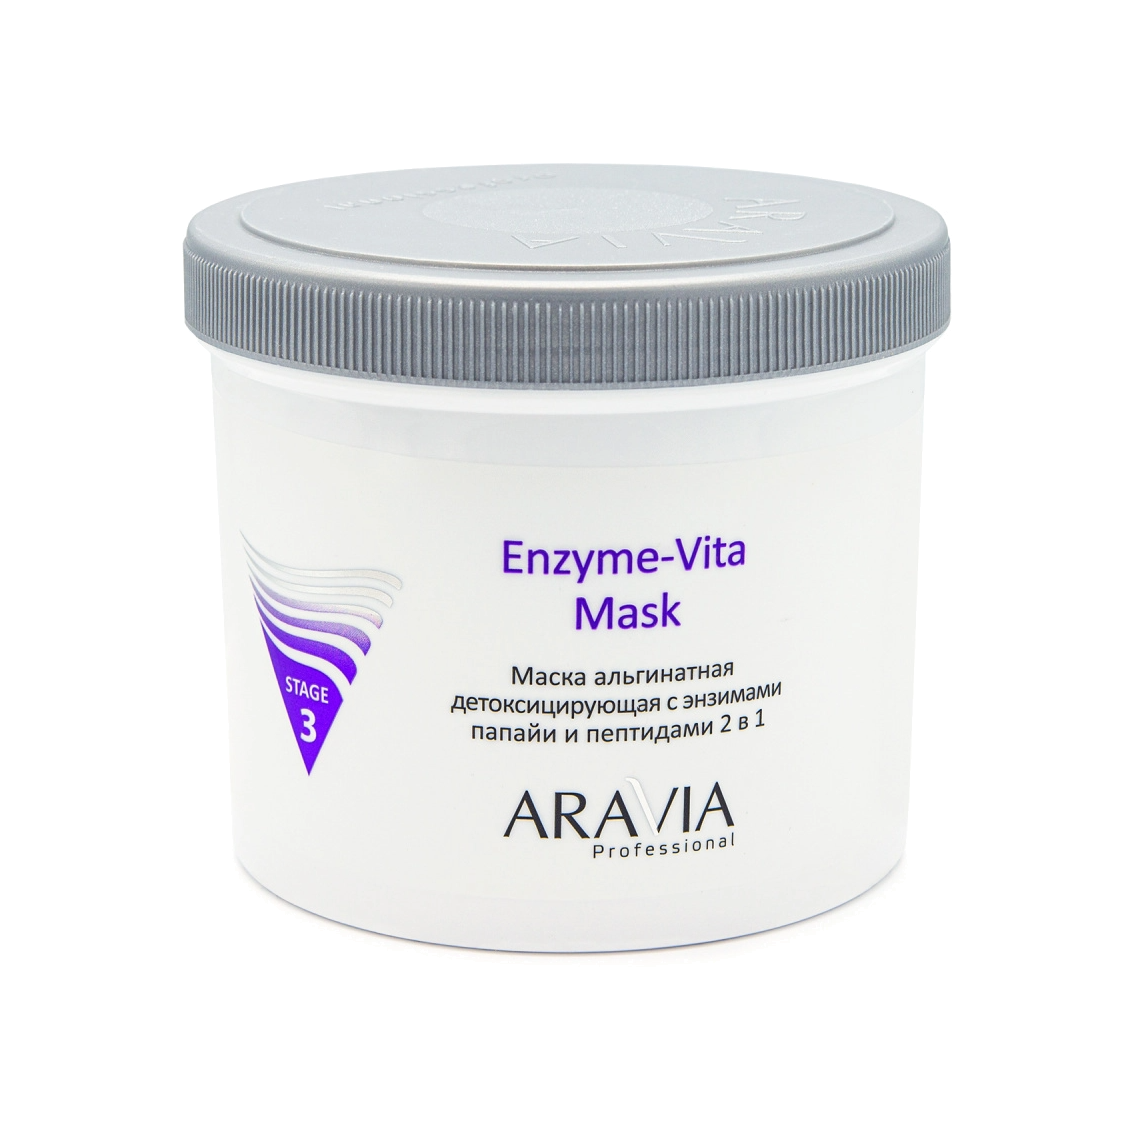 Маска альгинатная детоксицирующая с энзимами папайи и пептидами 2 в 1 Enzyme-Vita Mask VISAGEHALL